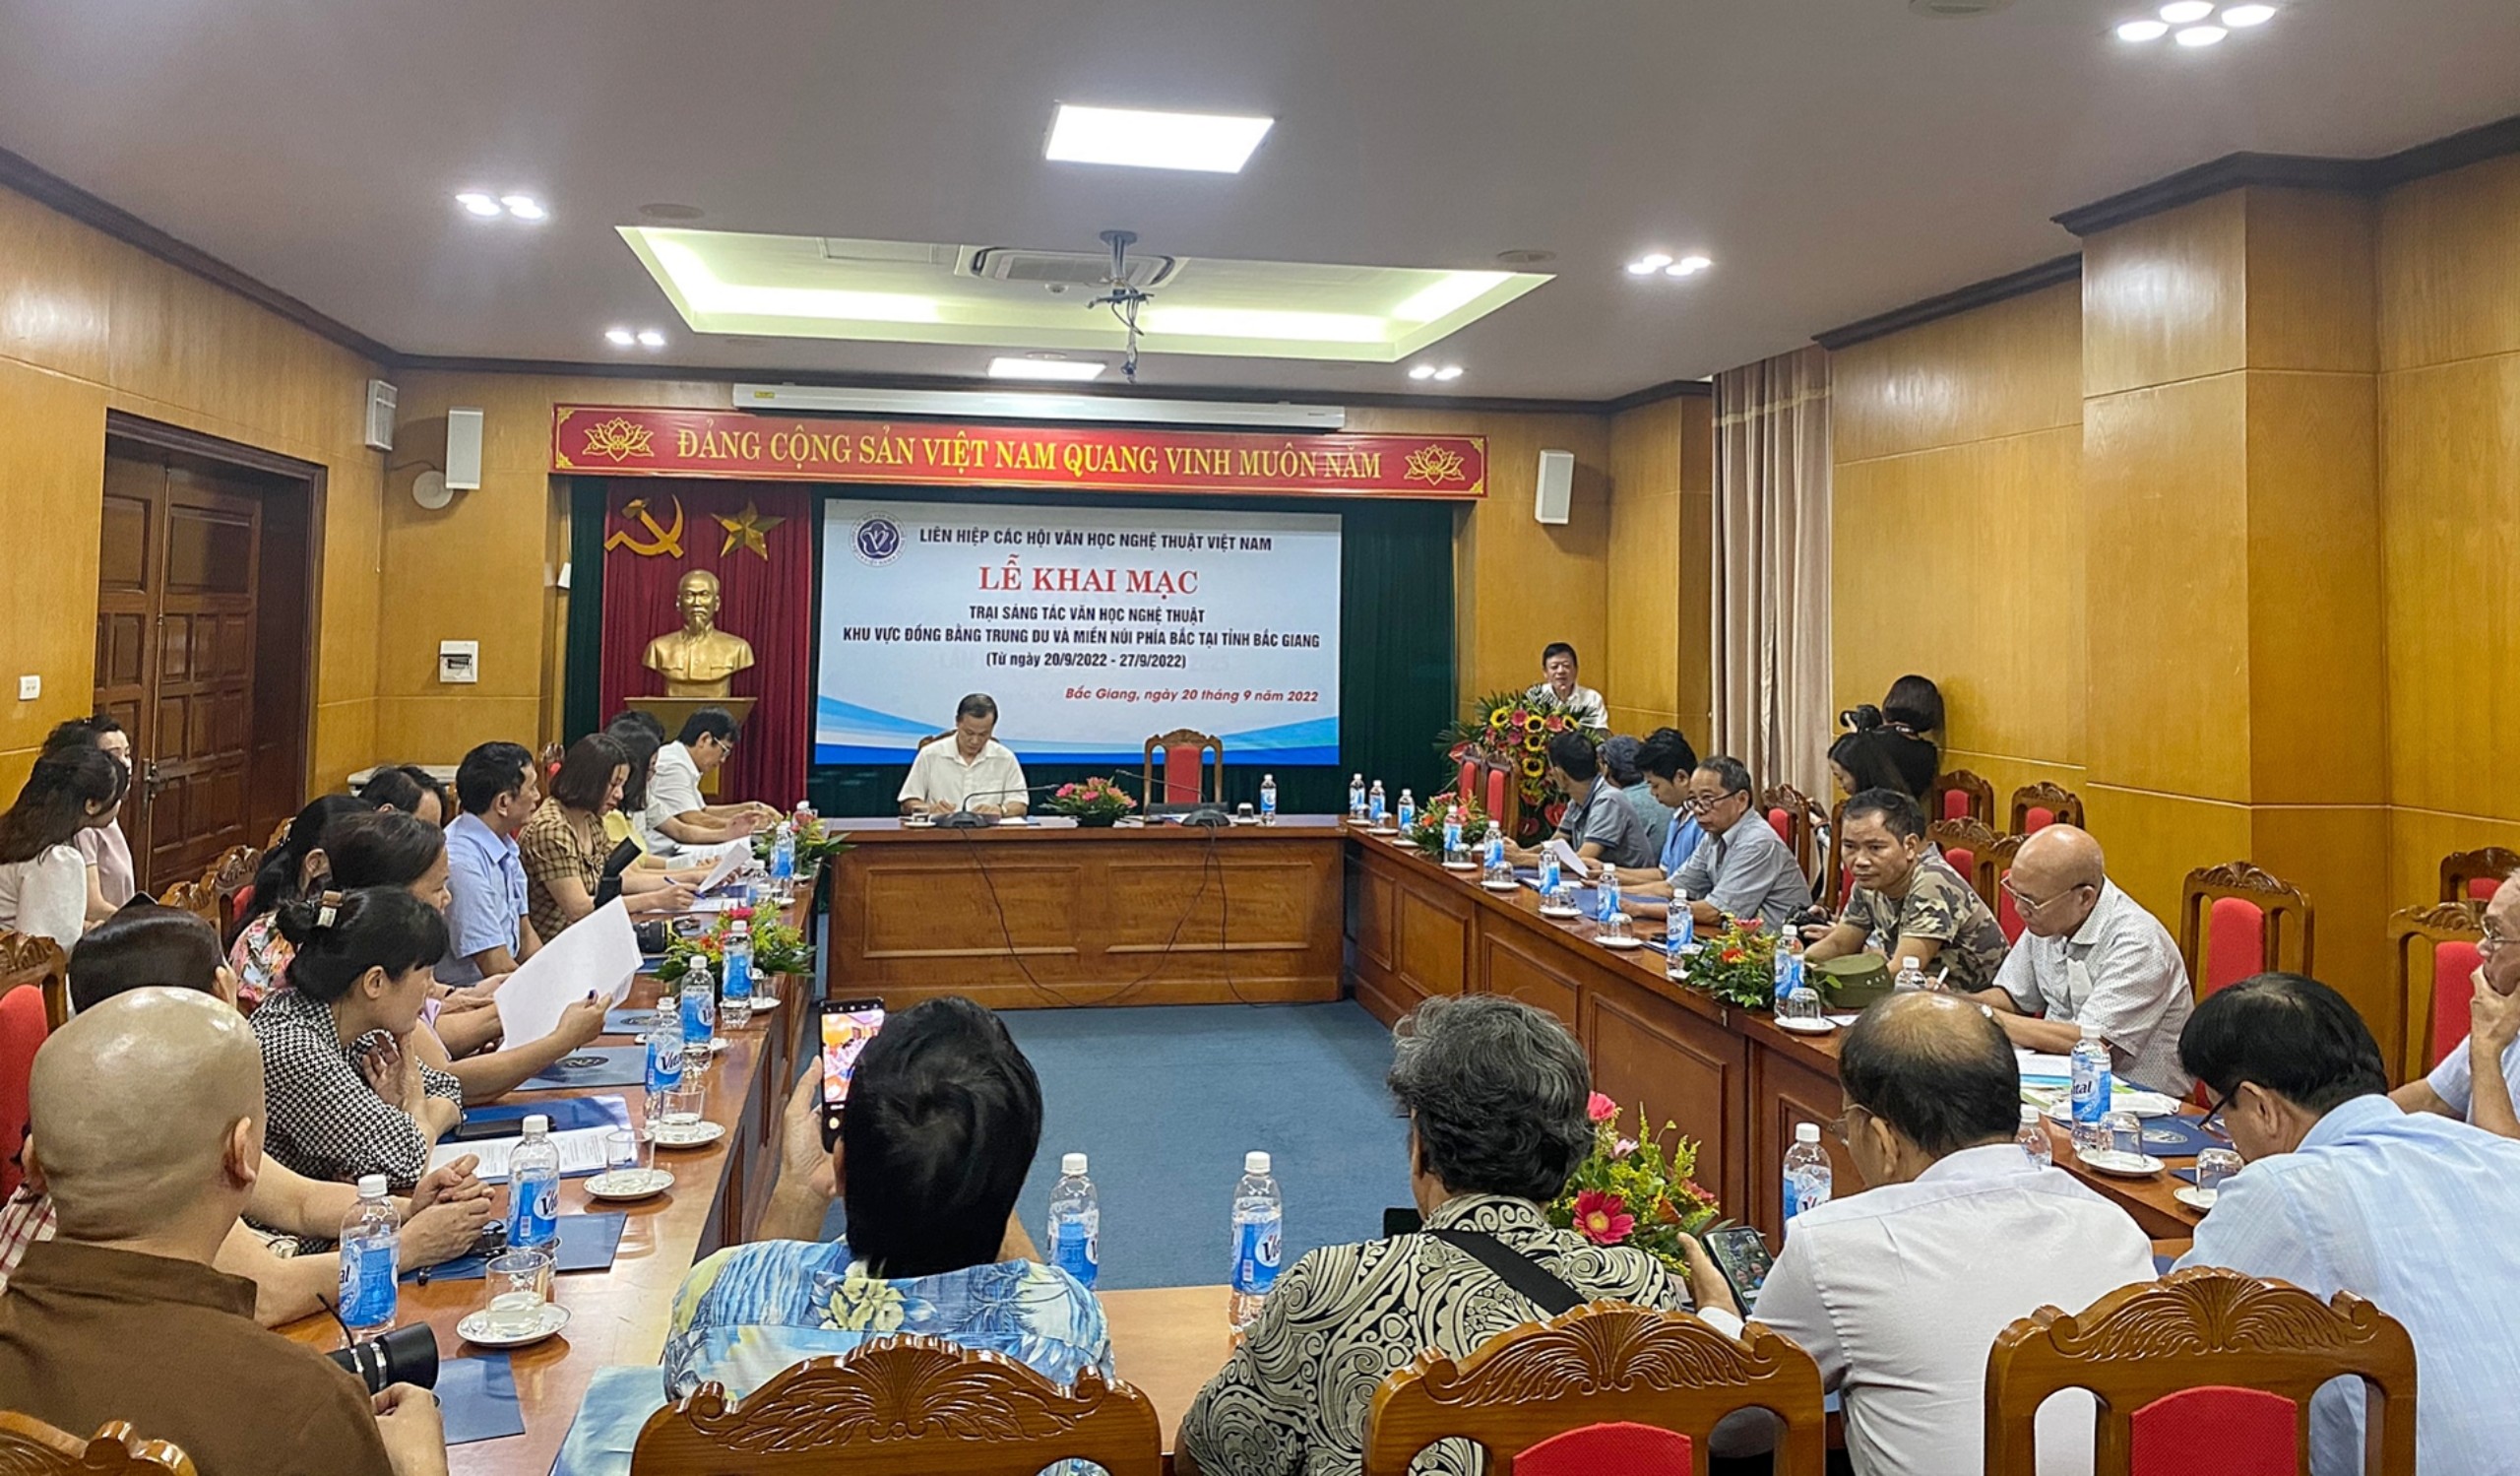 Liên hiệp các Hội Văn học nghệ thuật Việt Nam tổ chức trại sáng tác văn học nghệ thuật tại tỉnh Bắc Giang - 1